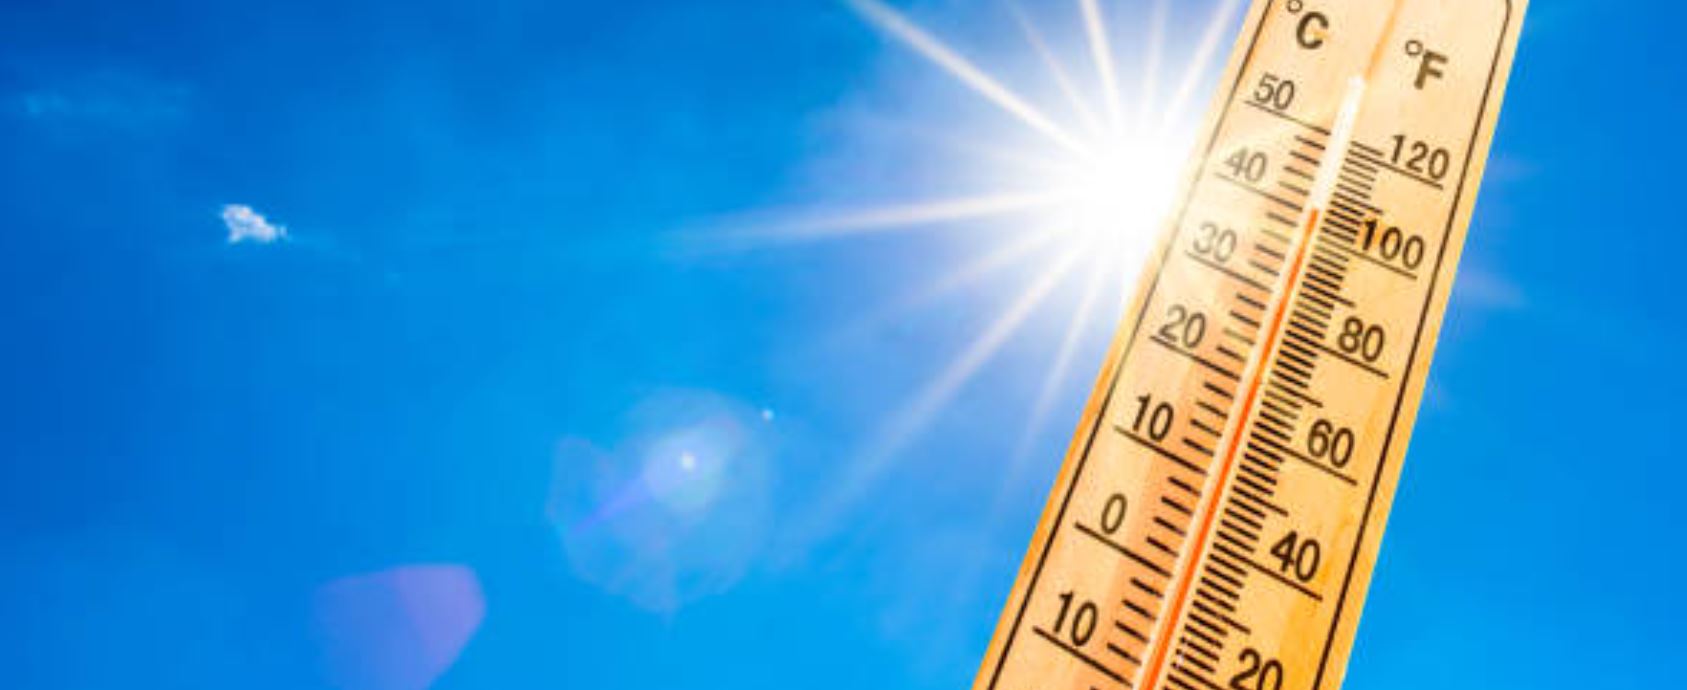 काठमाडौं उपत्यकाको तापक्रम ३२ डिग्री सेल्सियससम्म पुग्ने पूर्वानुमान